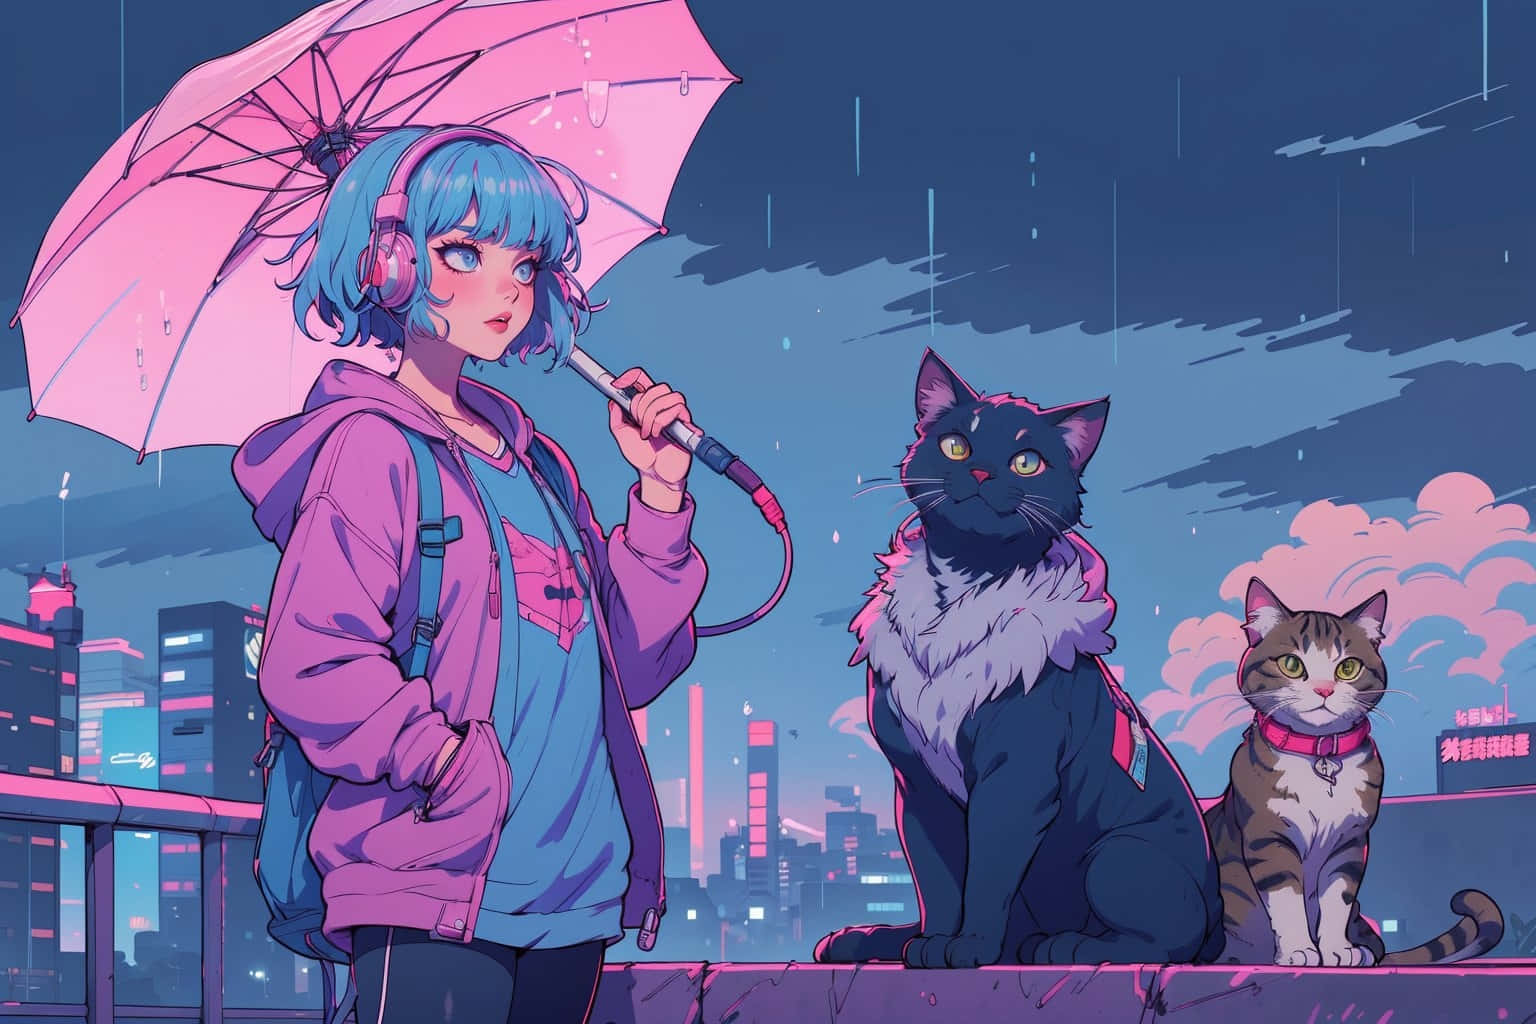 Cyberpunk Umbrella Girlwith Cats.jpg Wallpaper